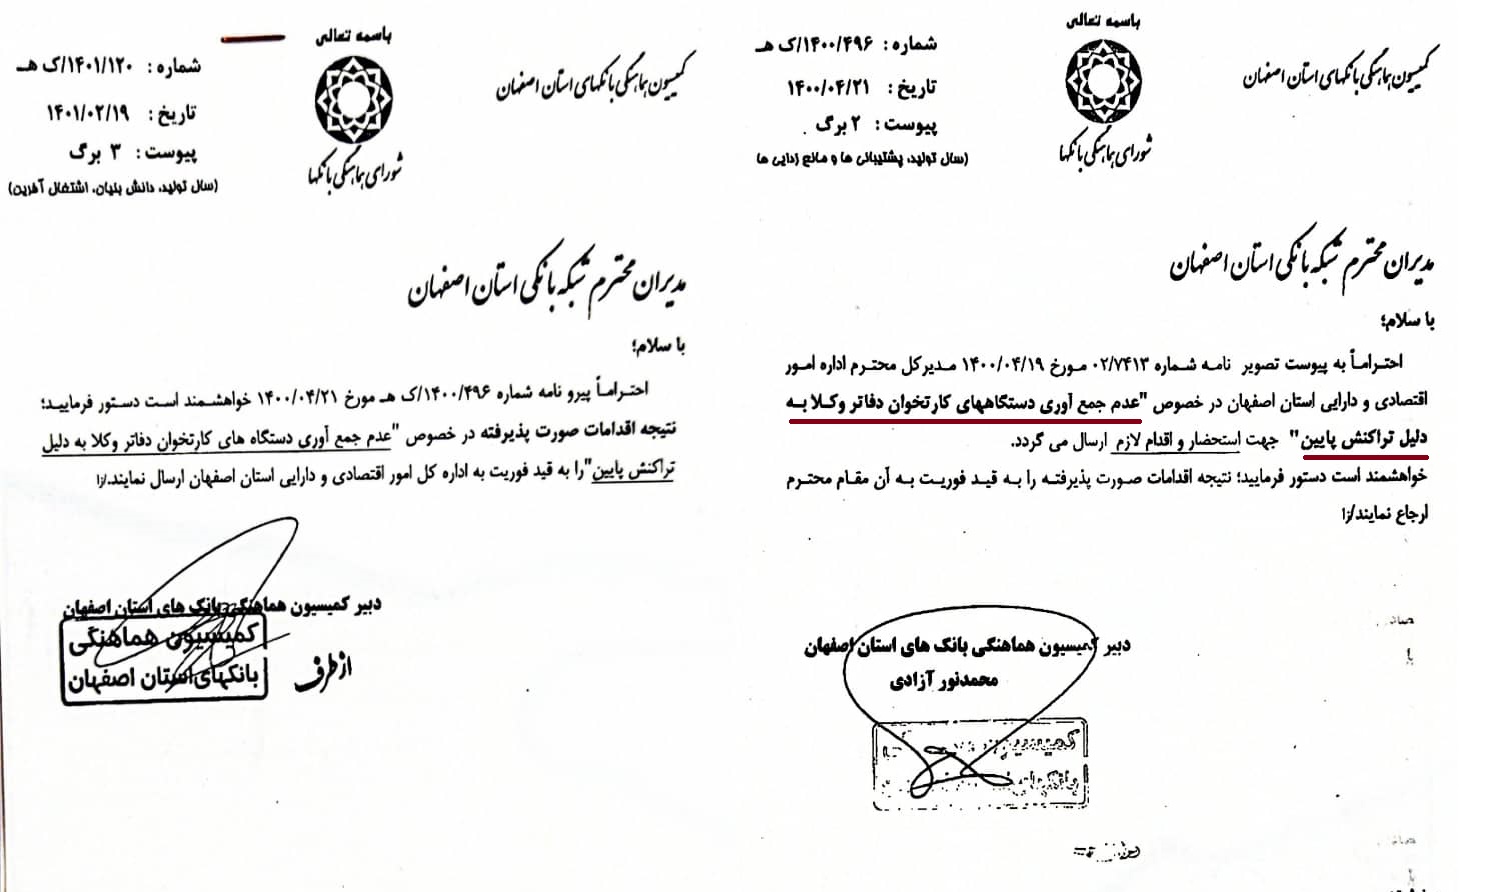  نامه حذف حد نصاب تعداد و مبلغ تراکنش برای دستگاه های کارتخوان دفاتر وکلا در استان اصفهان